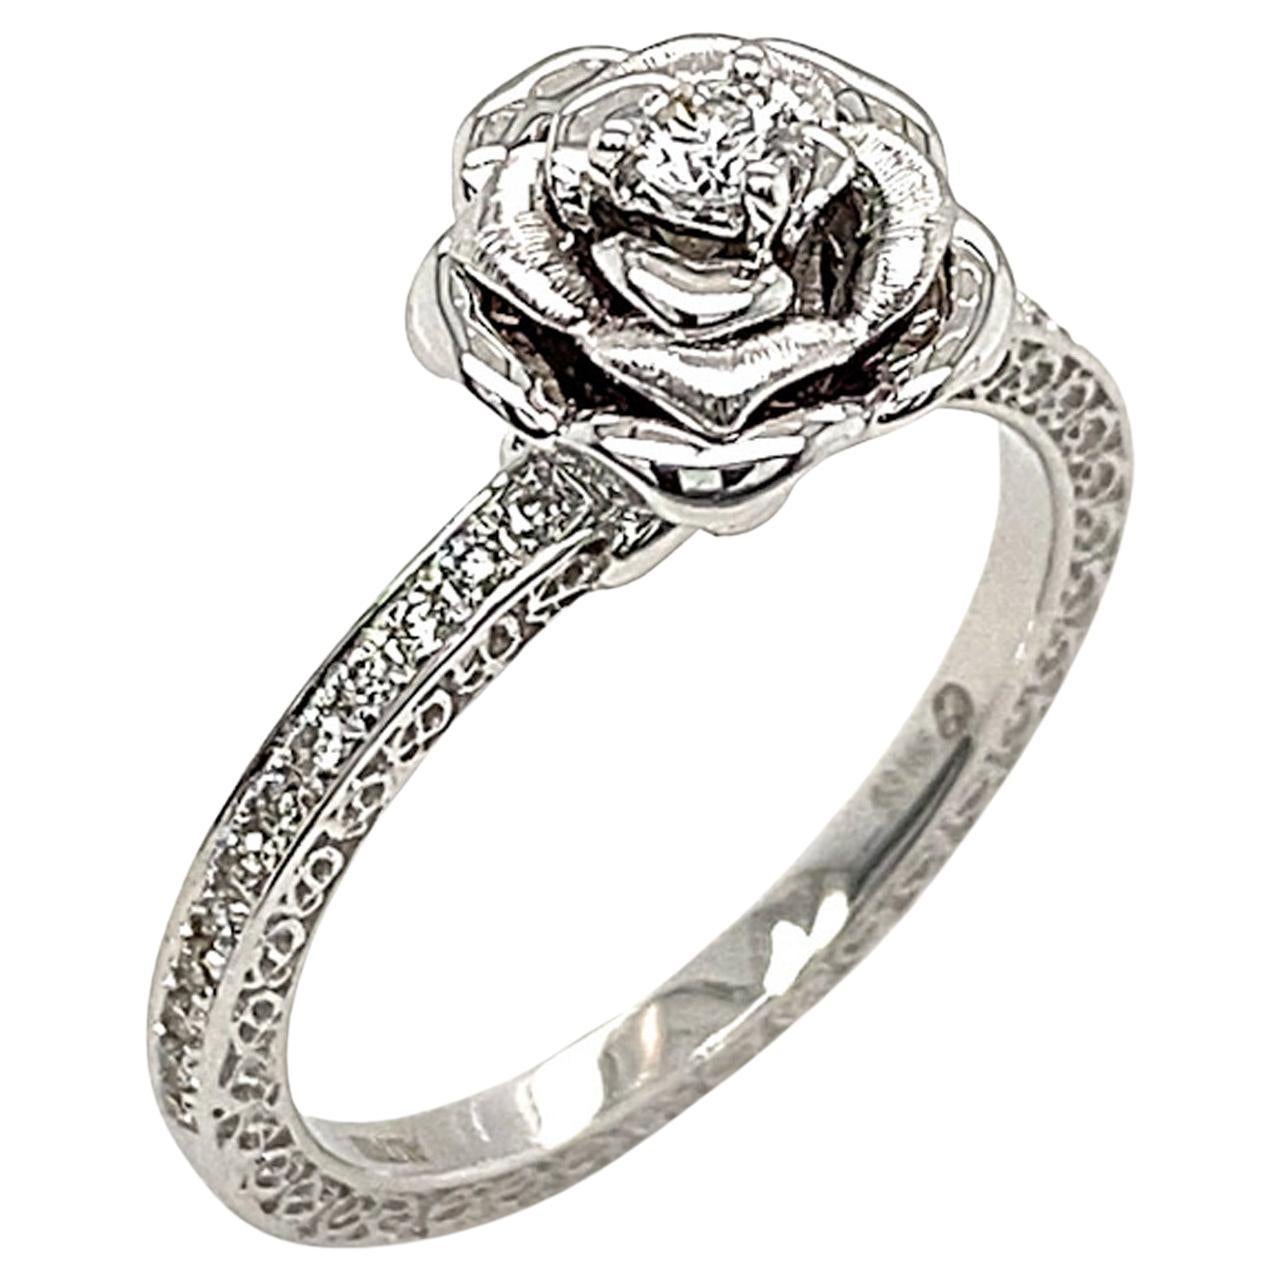 Eine blühende Rose - das universelle Symbol für Liebe, Schönheit und Dankbarkeit. 

Der Blooming Rose Solitaire Diamond Ring von Dilys' zeichnet sich durch einen runden Solitär-Diamanten (0,08 ct) in der Mitte des Rings aus, der von 24 Diamanten